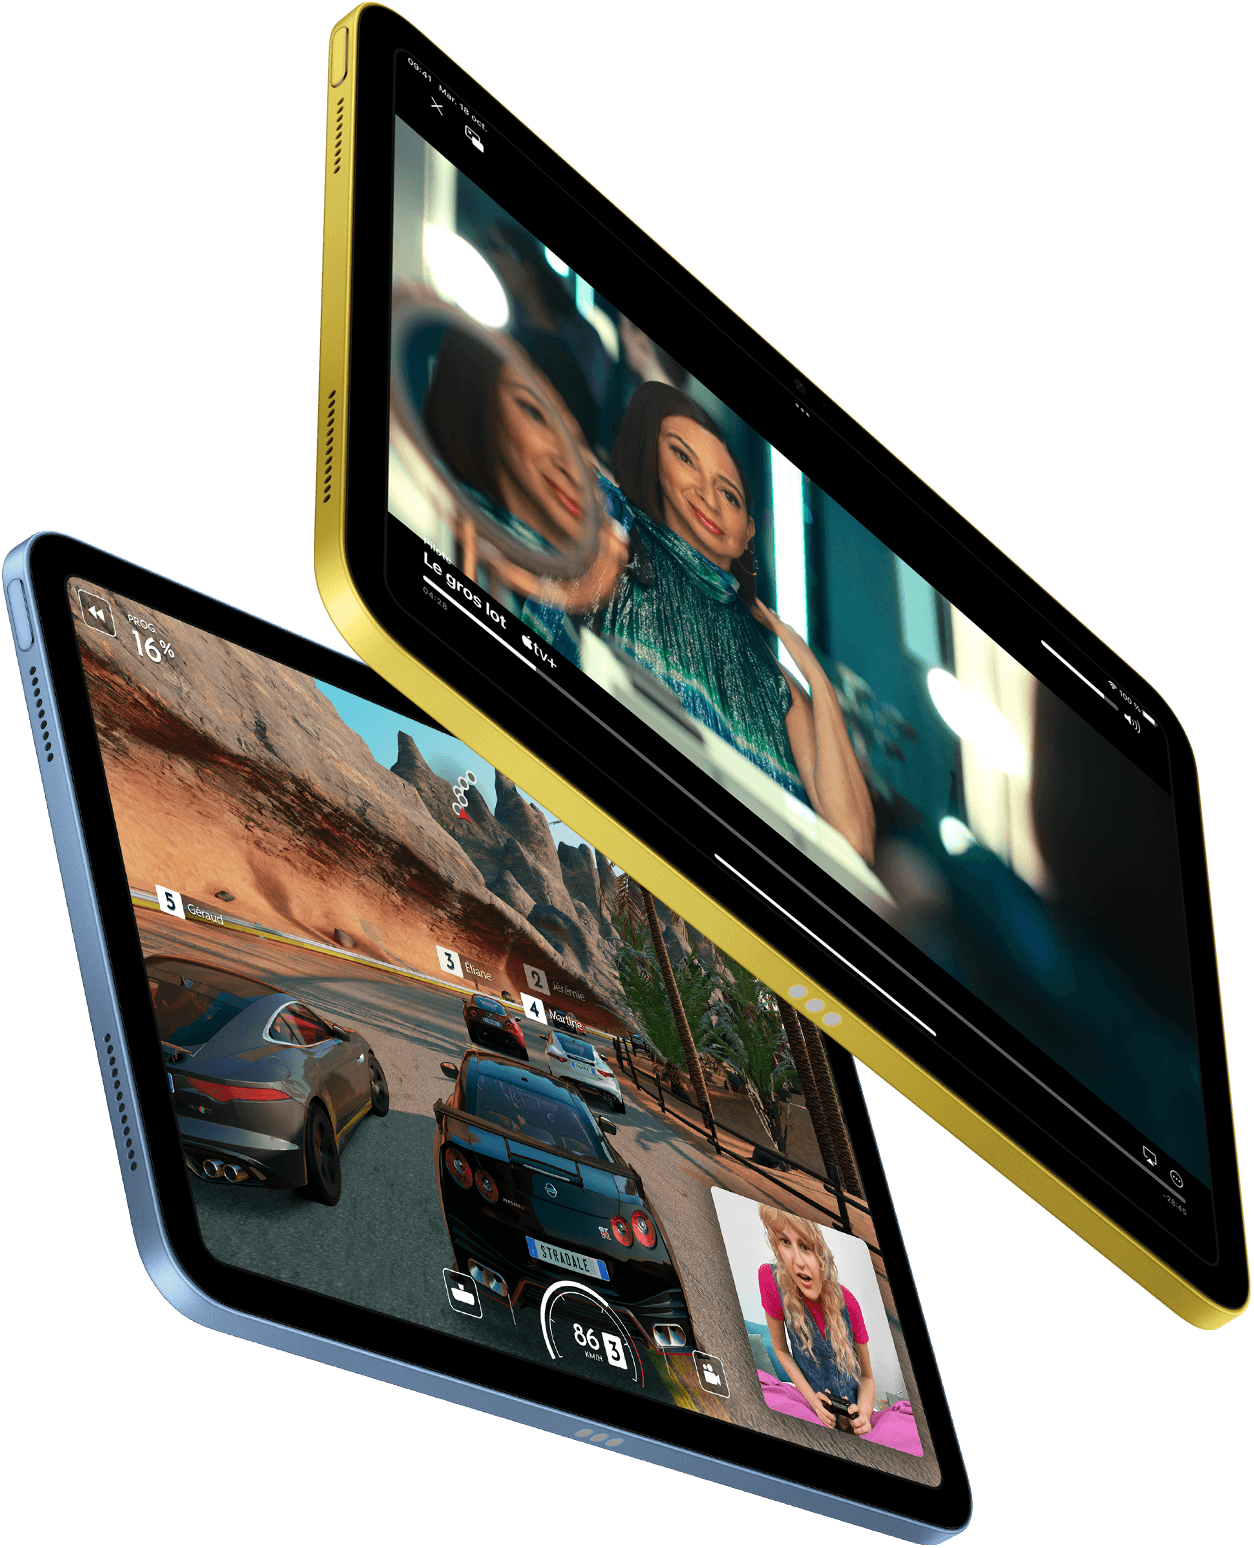 Démonstration d’Apple TV+ et de l’expérience de jeu offerte par SharePlay sur un iPad.